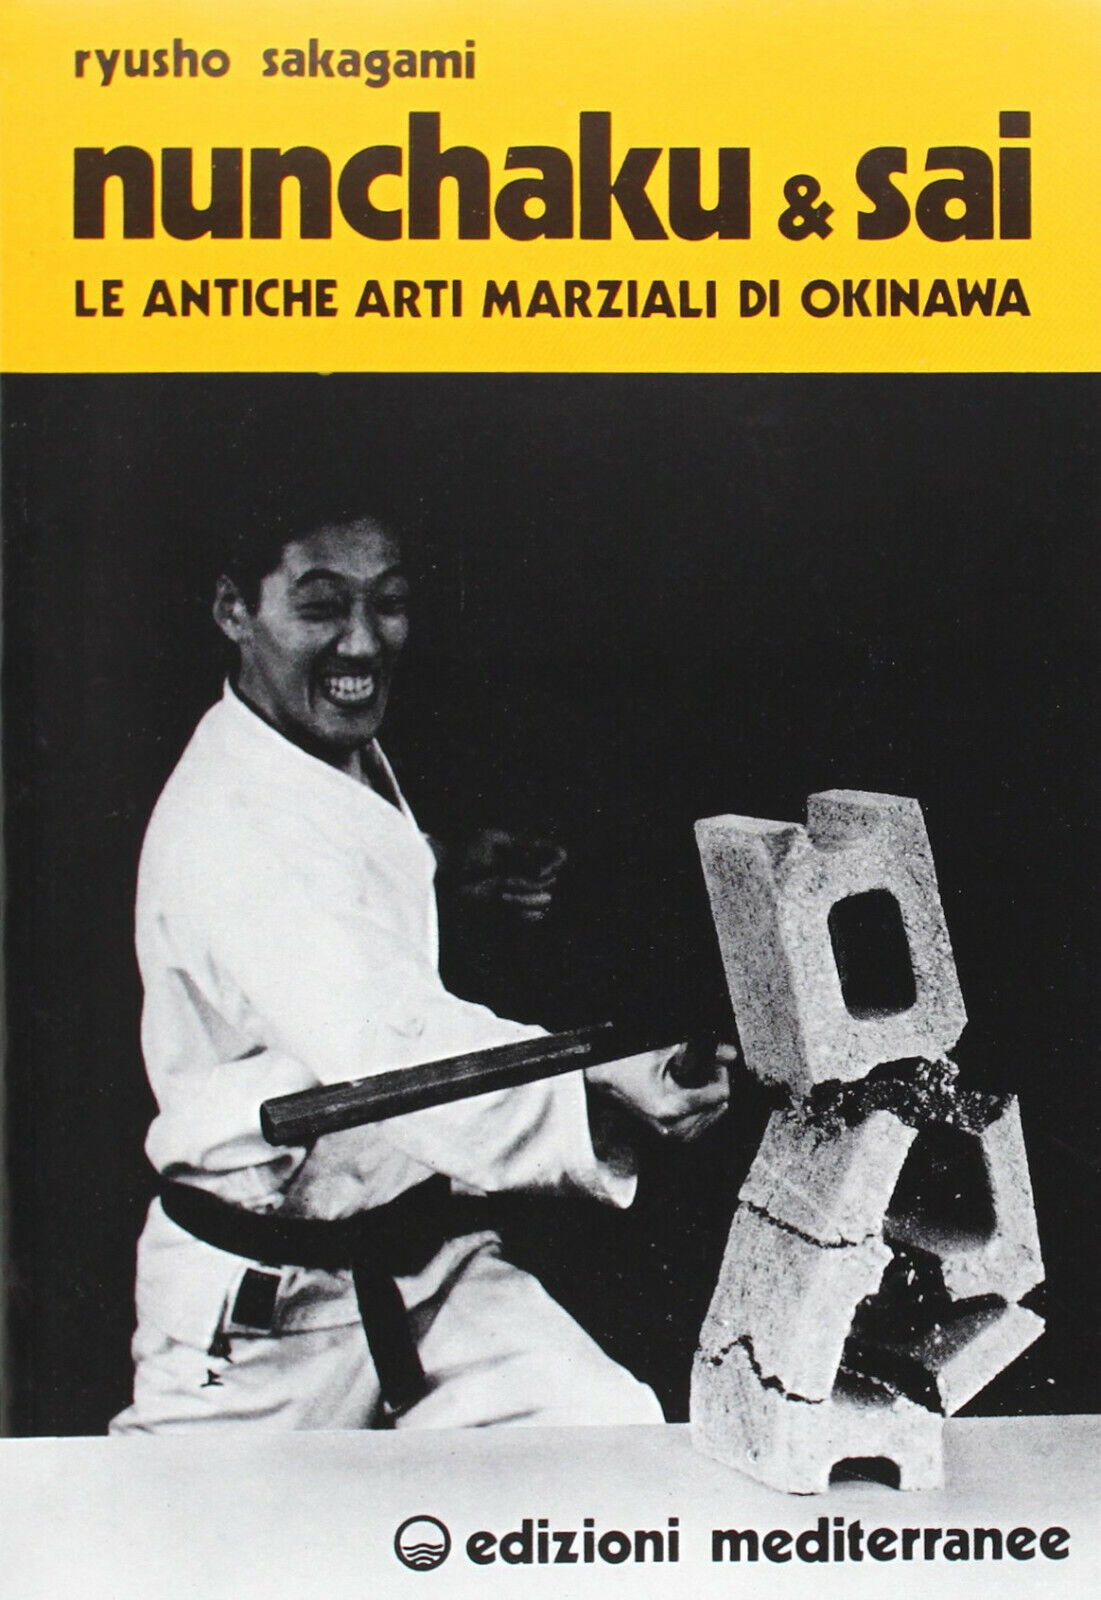 Nunchaku e sai - Ryusho Sakagami - Edizioni mediterranee, 1983